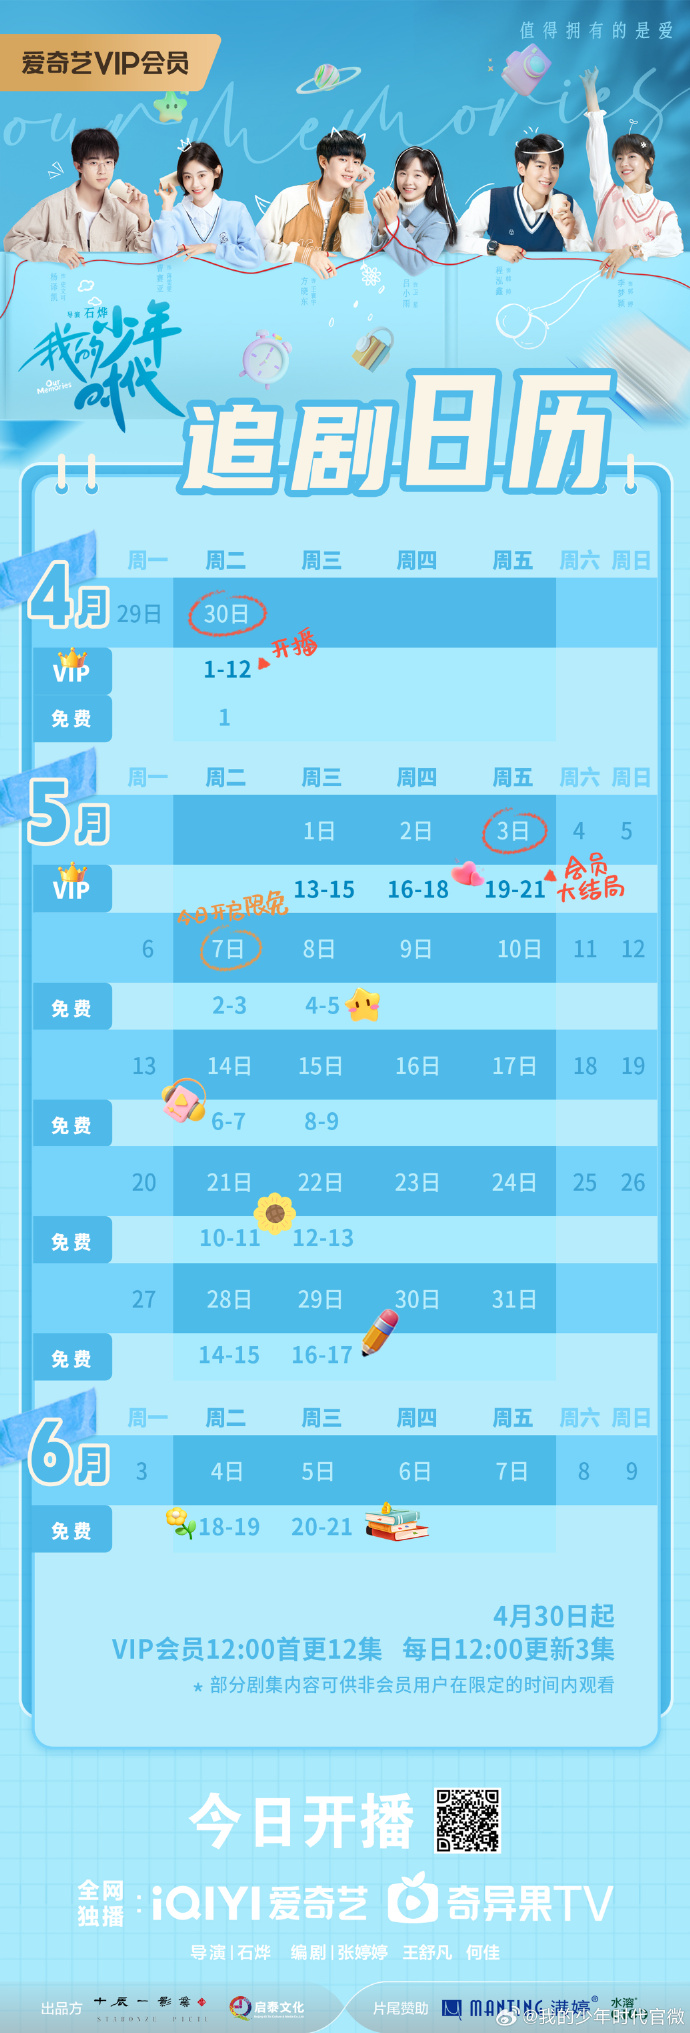 爱奇艺VIP会员首更12集 网剧《我的少年时代》追剧日历及更新时间表介绍